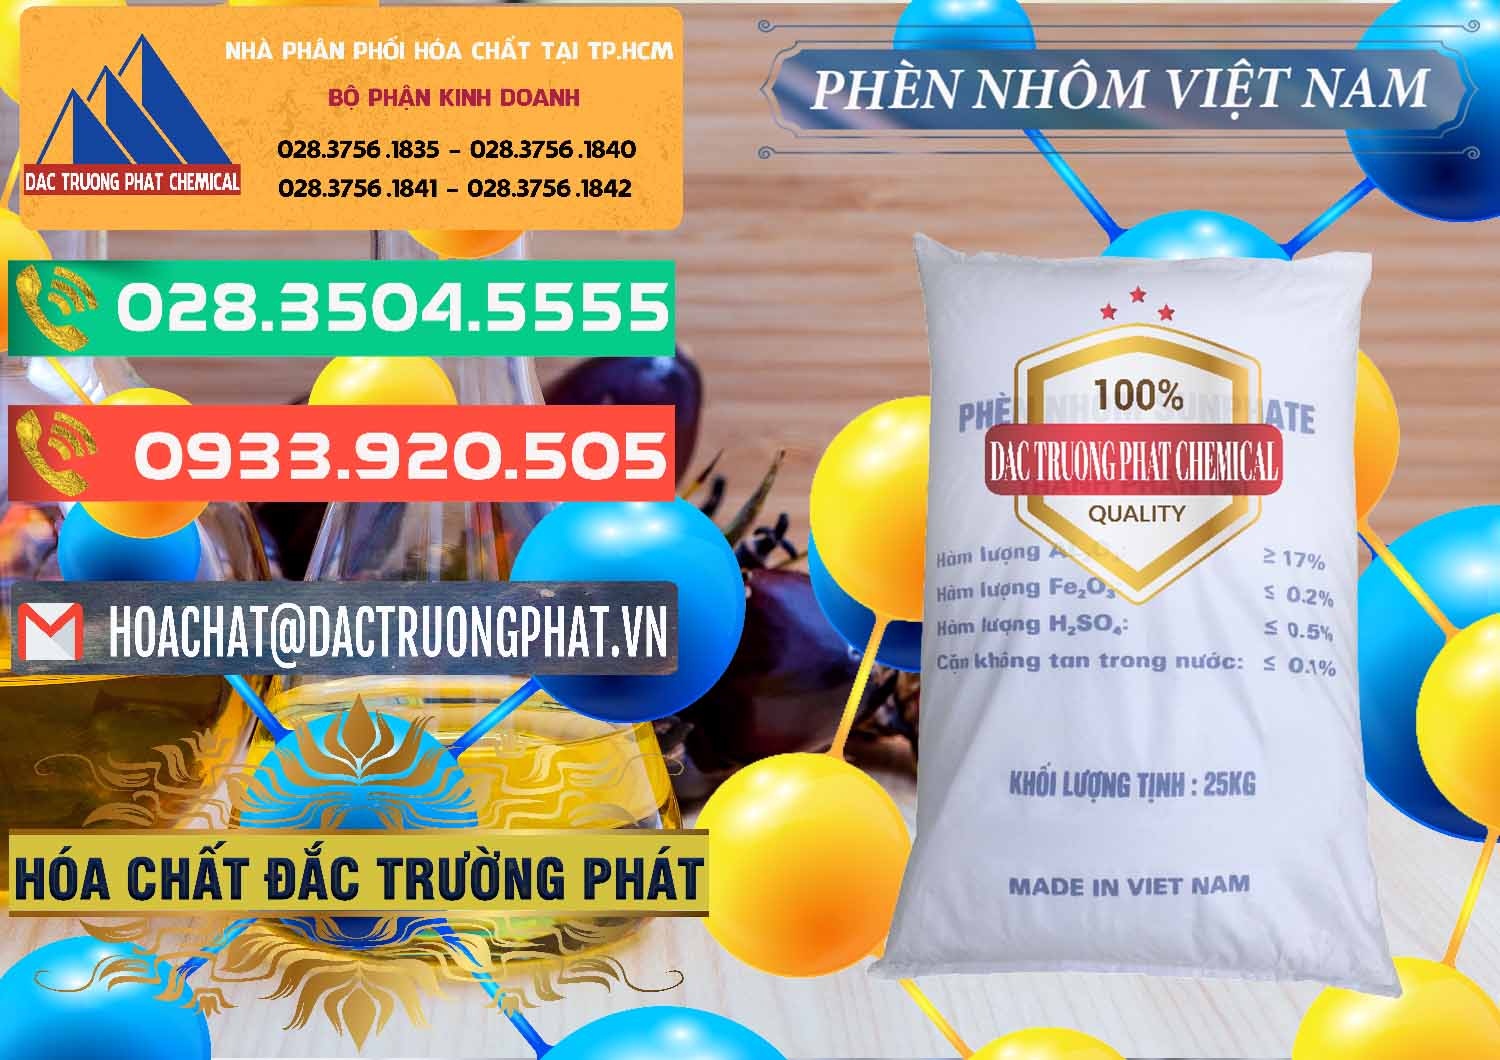 Nơi chuyên bán - phân phối Phèn Nhôm - Al2(SO4)3 17% Việt Nam - 0465 - Cty chuyên bán _ phân phối hóa chất tại TP.HCM - congtyhoachat.com.vn